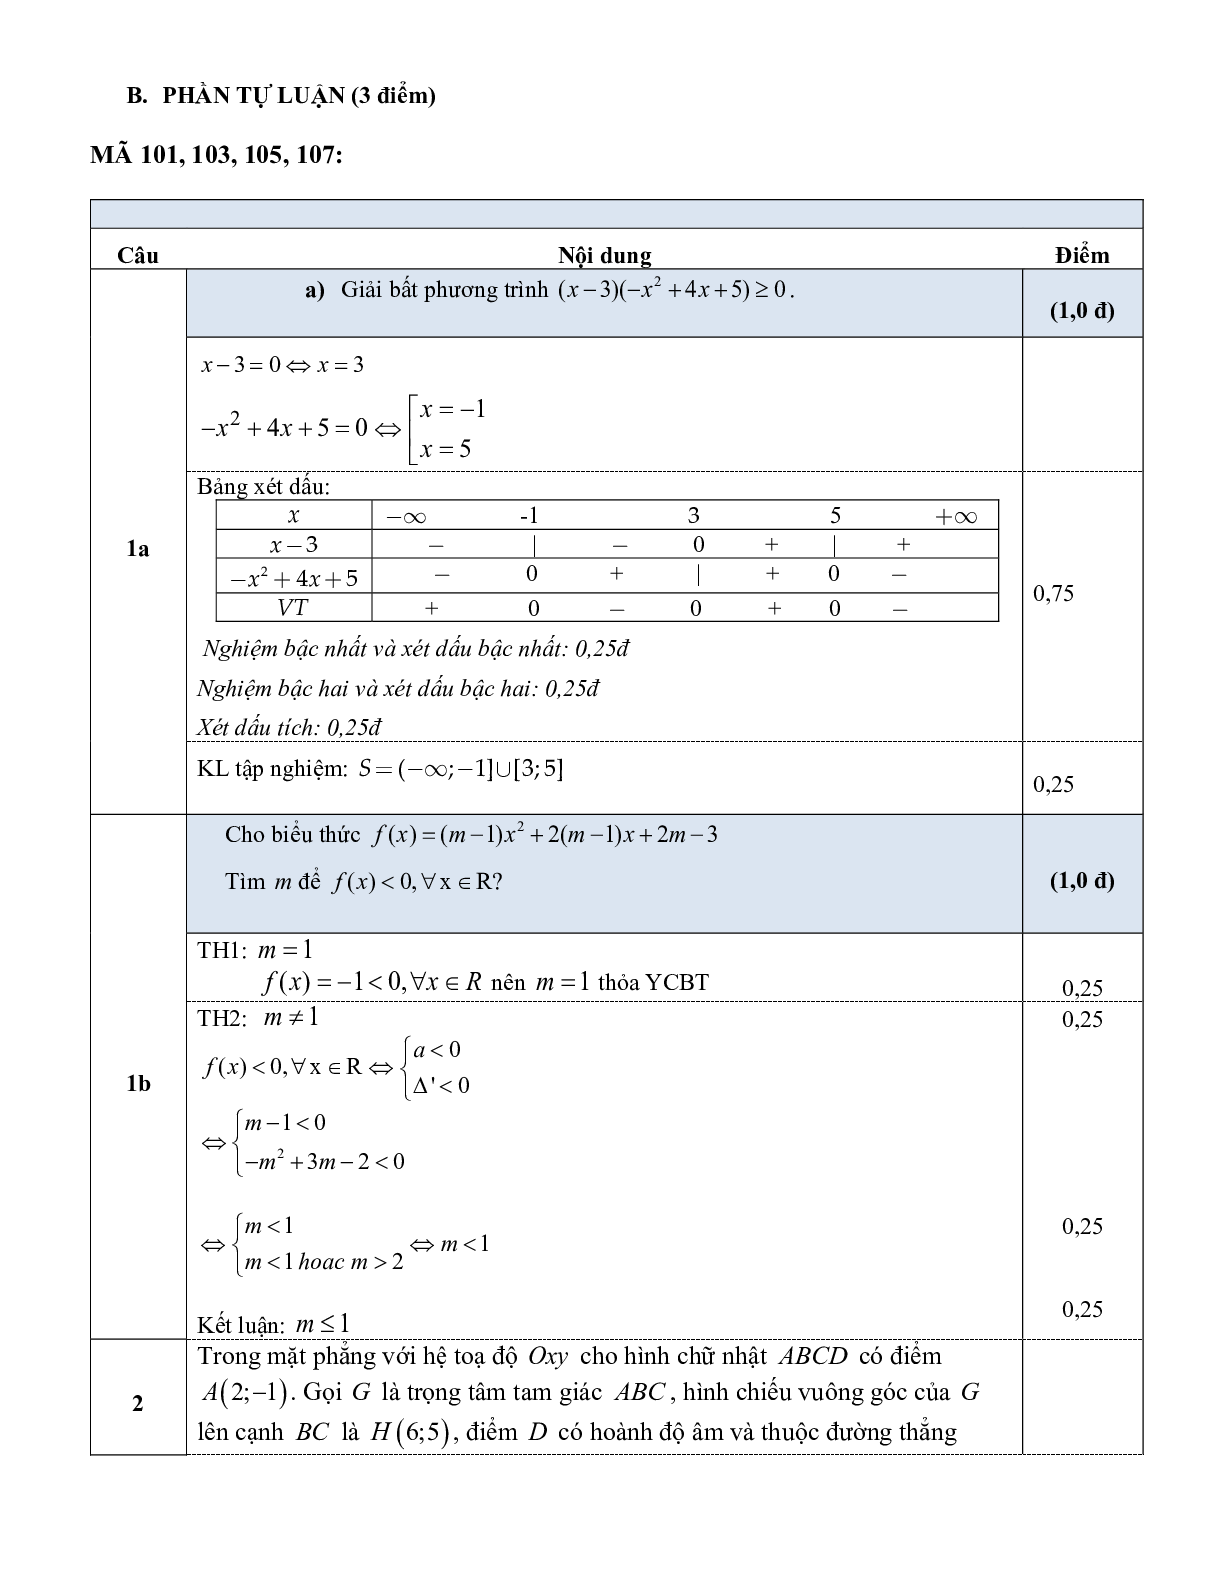 Đề thi cuối học kì 2 môn toán 10 sở GD và ĐT Quảng Nam năm học 2020-2021 (trang 5)